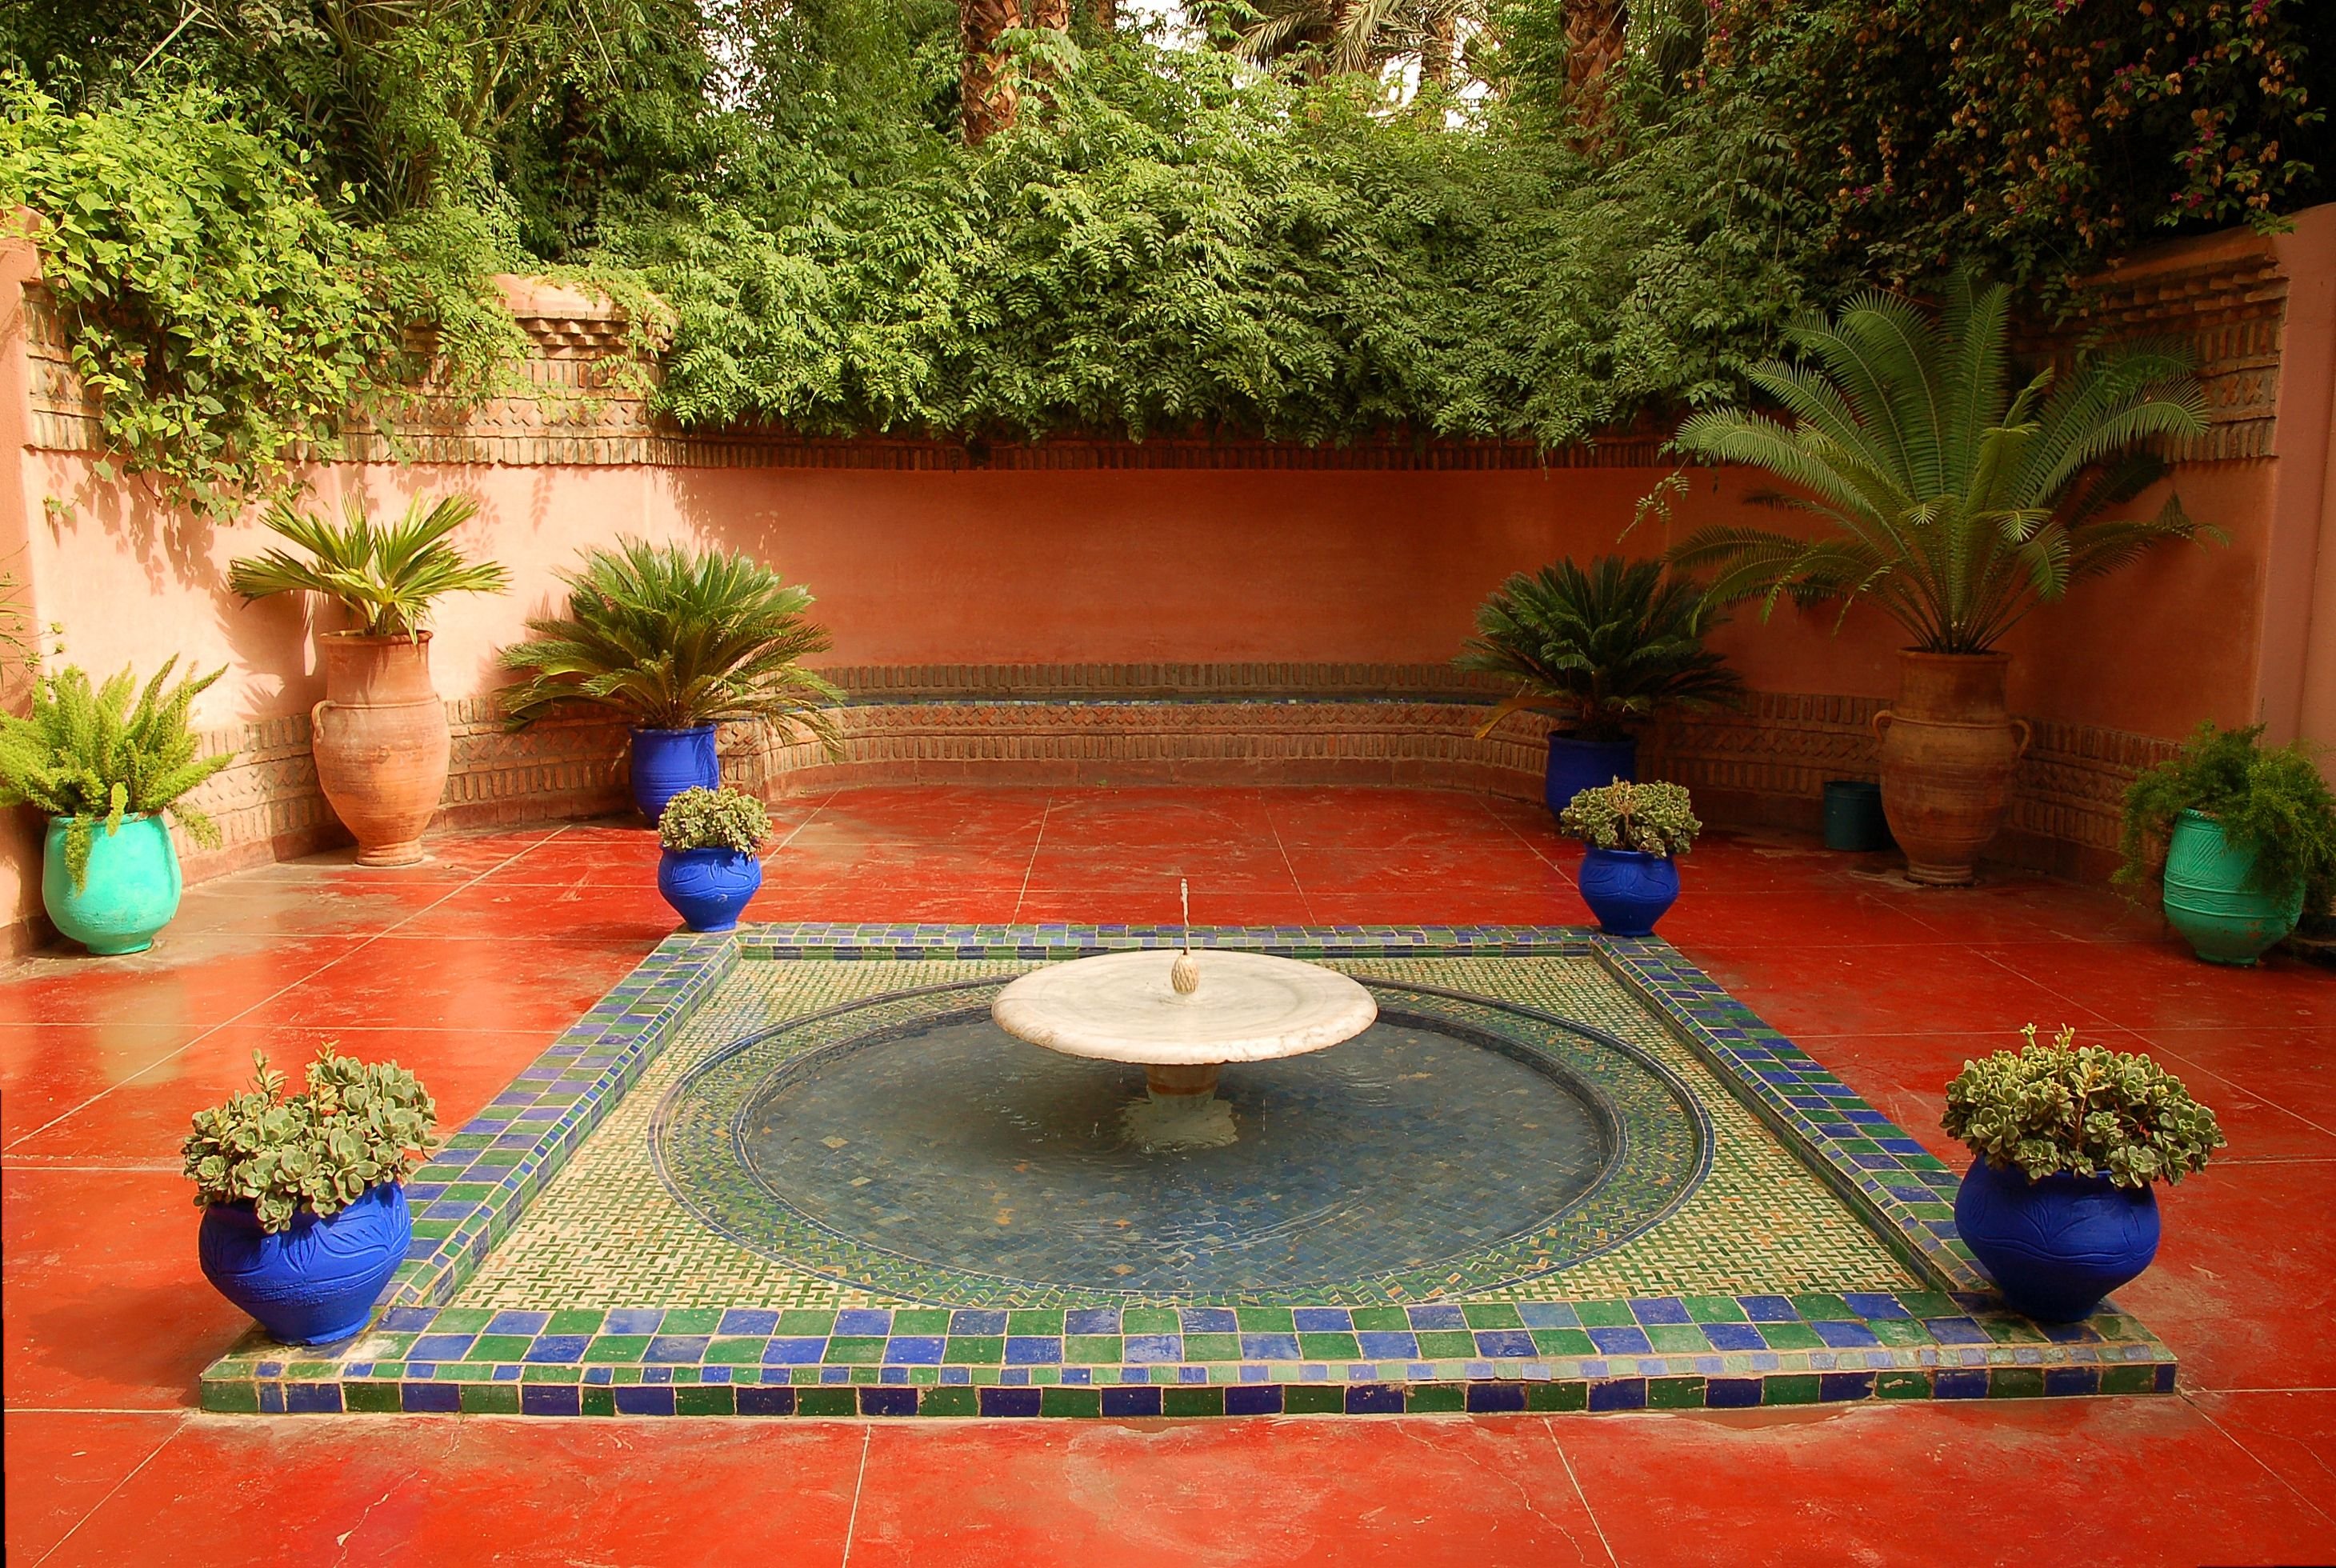 Мусульманский садик. Ландшафт Восточный стиль Марокко. Испано-мавританский стиль. Испано-мавританский стиль сада. Мусульманские сады мавританский стиль ландшафта.